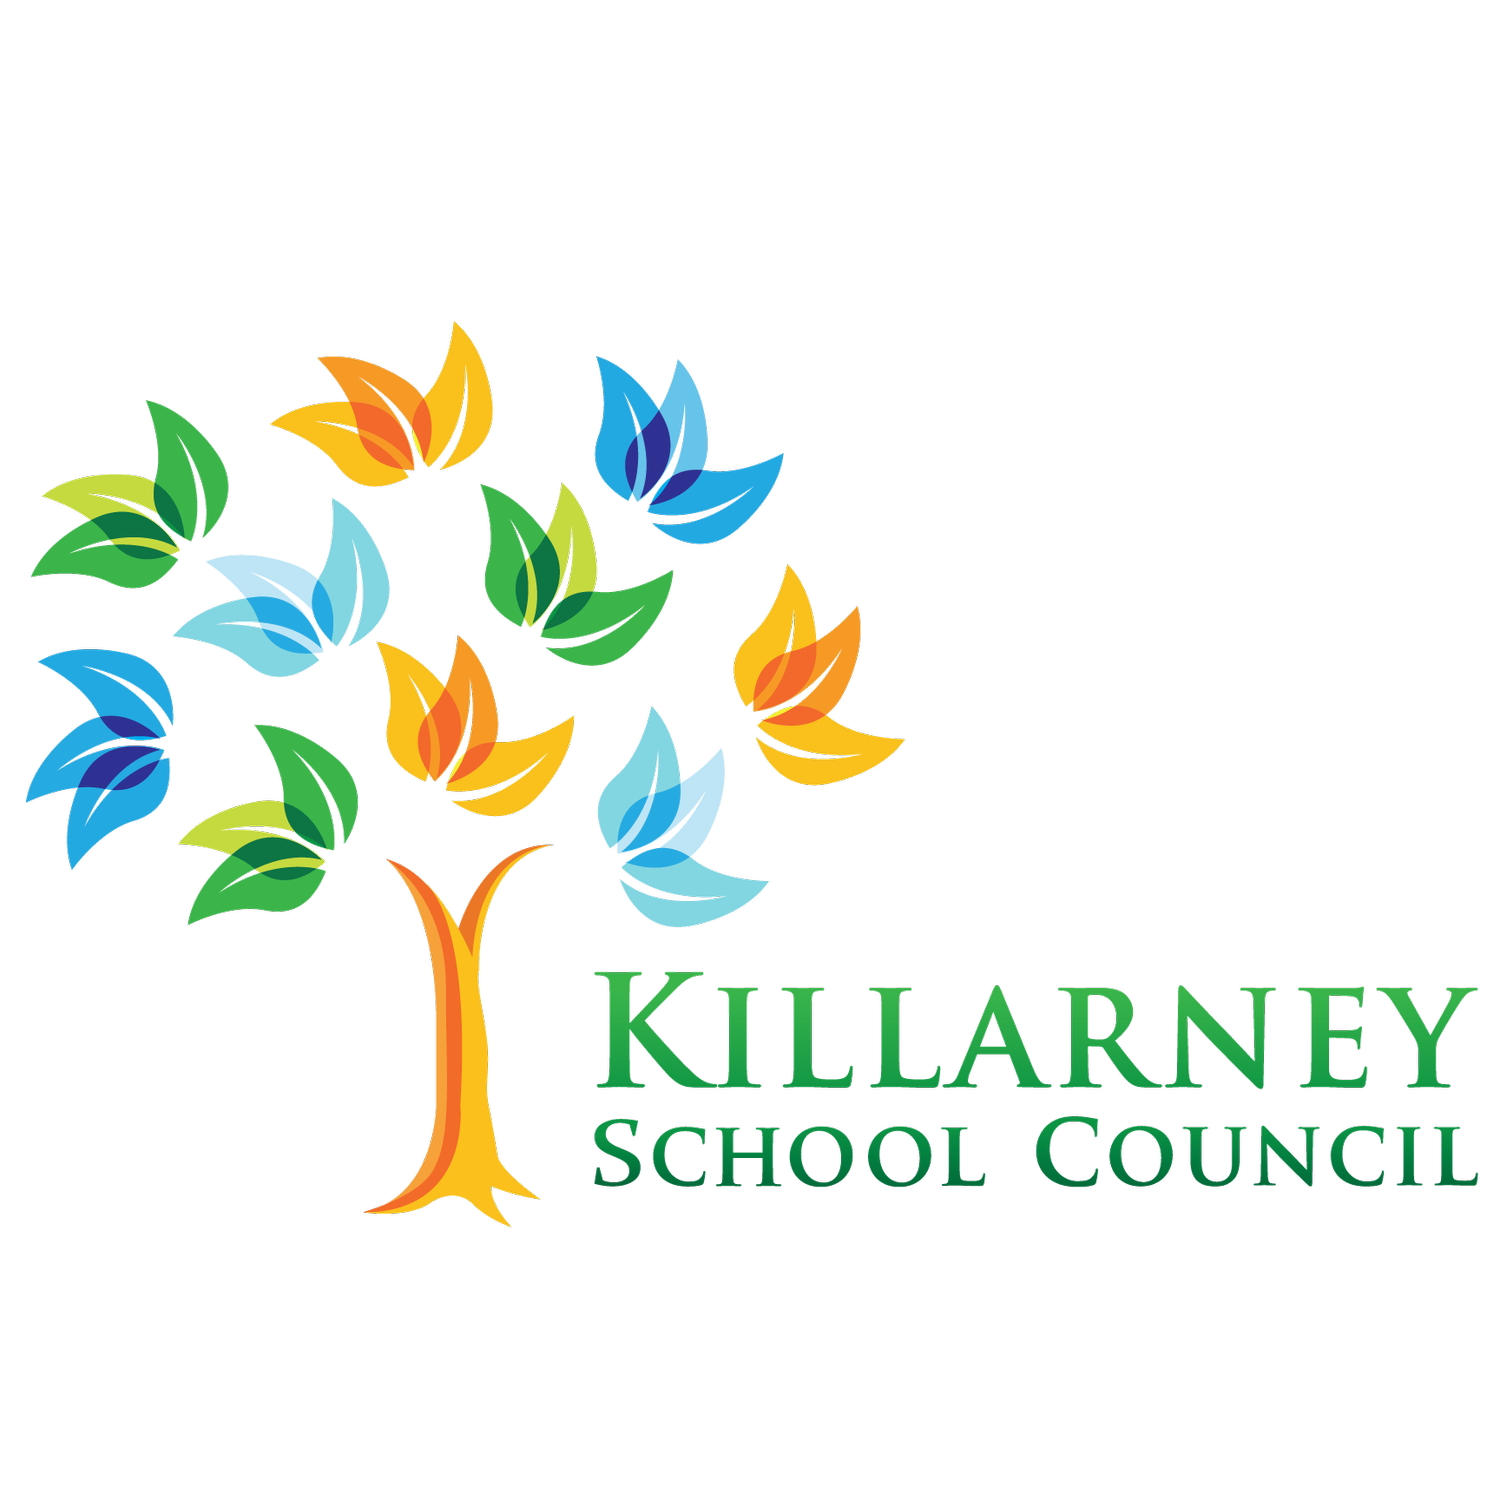 Killarney School Council